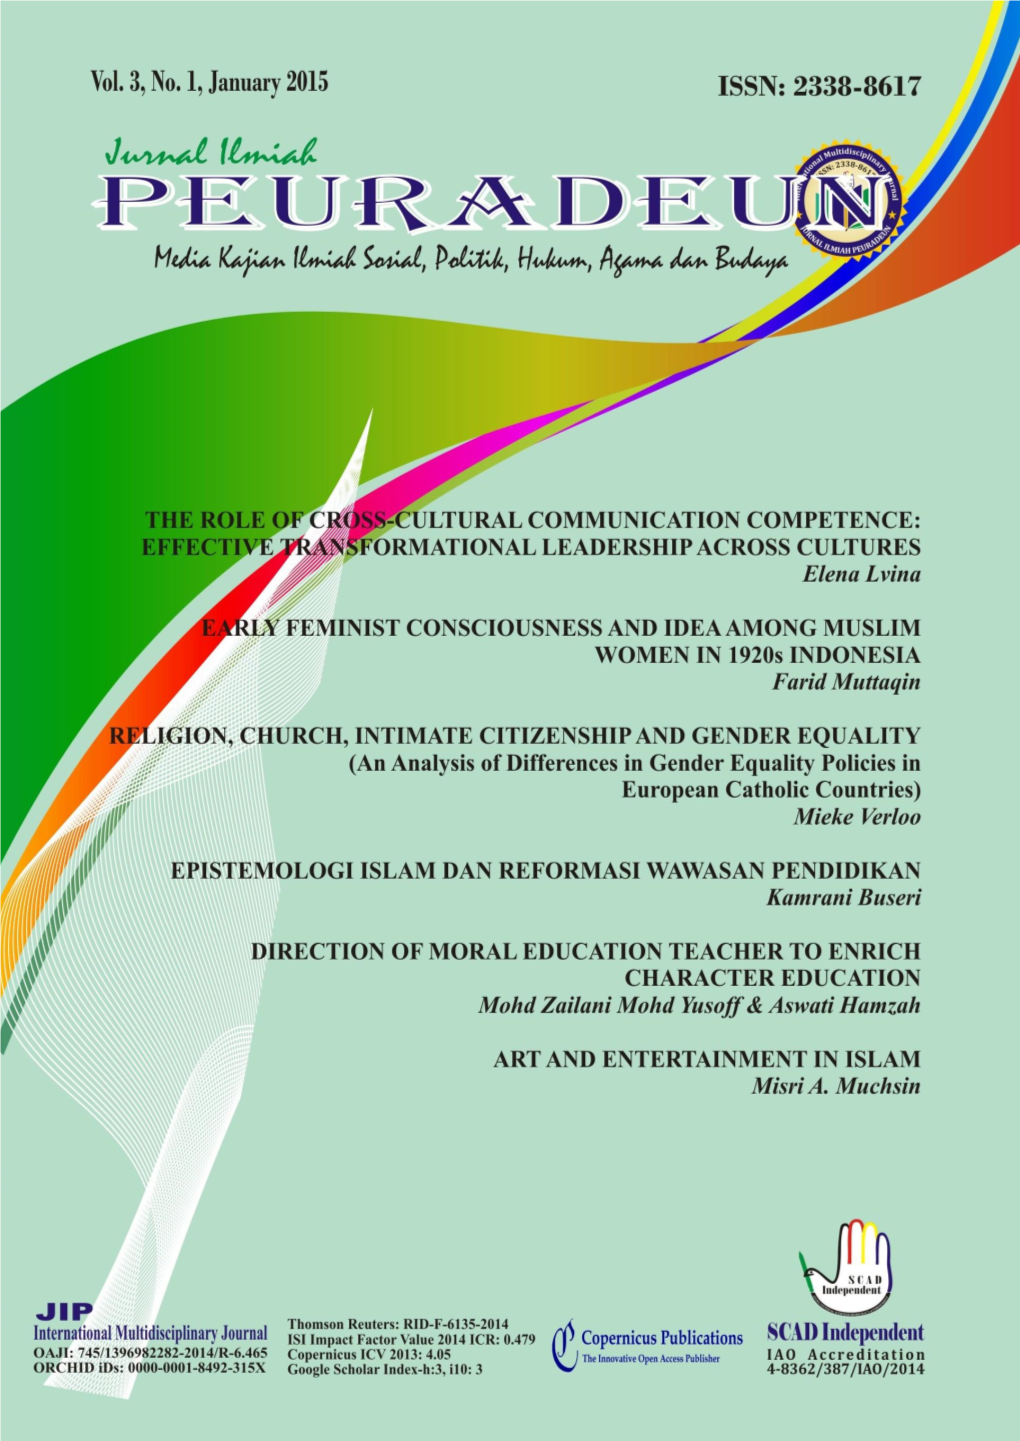 International Multidisciplinary Journal ISSN: 2338-8617